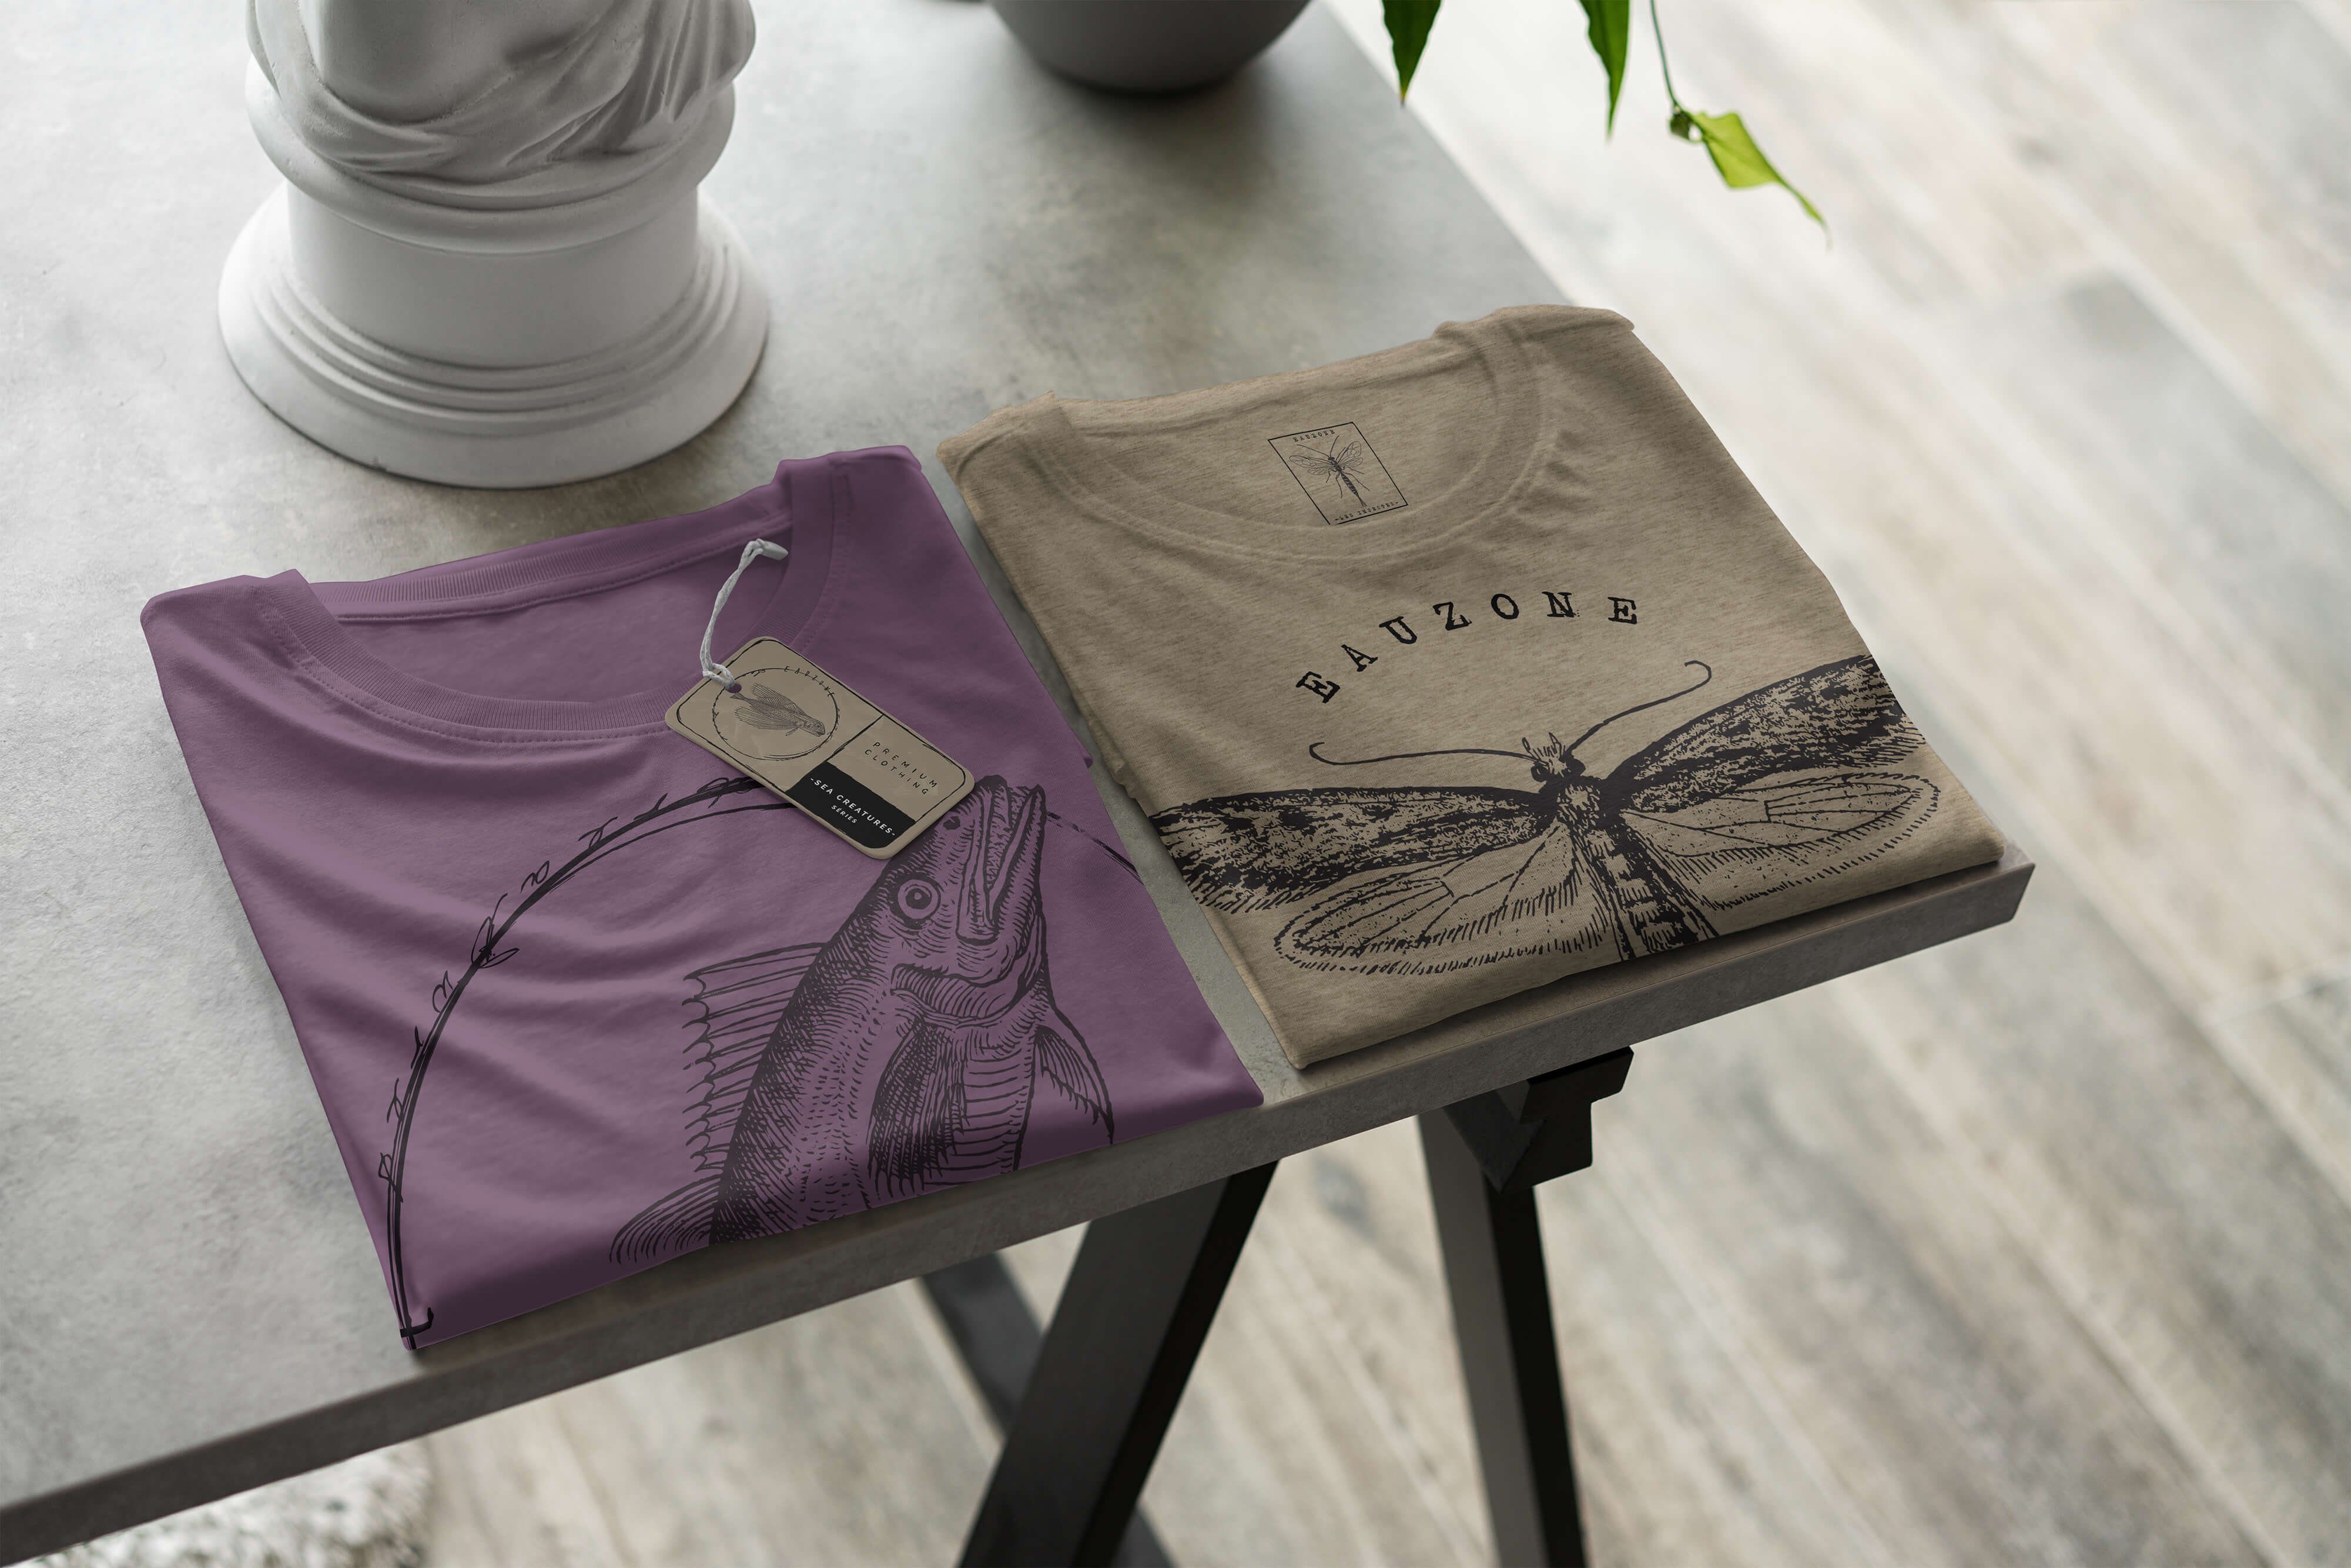 Sinus Art T-Shirt T-Shirt Tiefsee Sea - Schnitt 098 und Fische feine / Creatures, Struktur sportlicher Sea Shiraz Serie